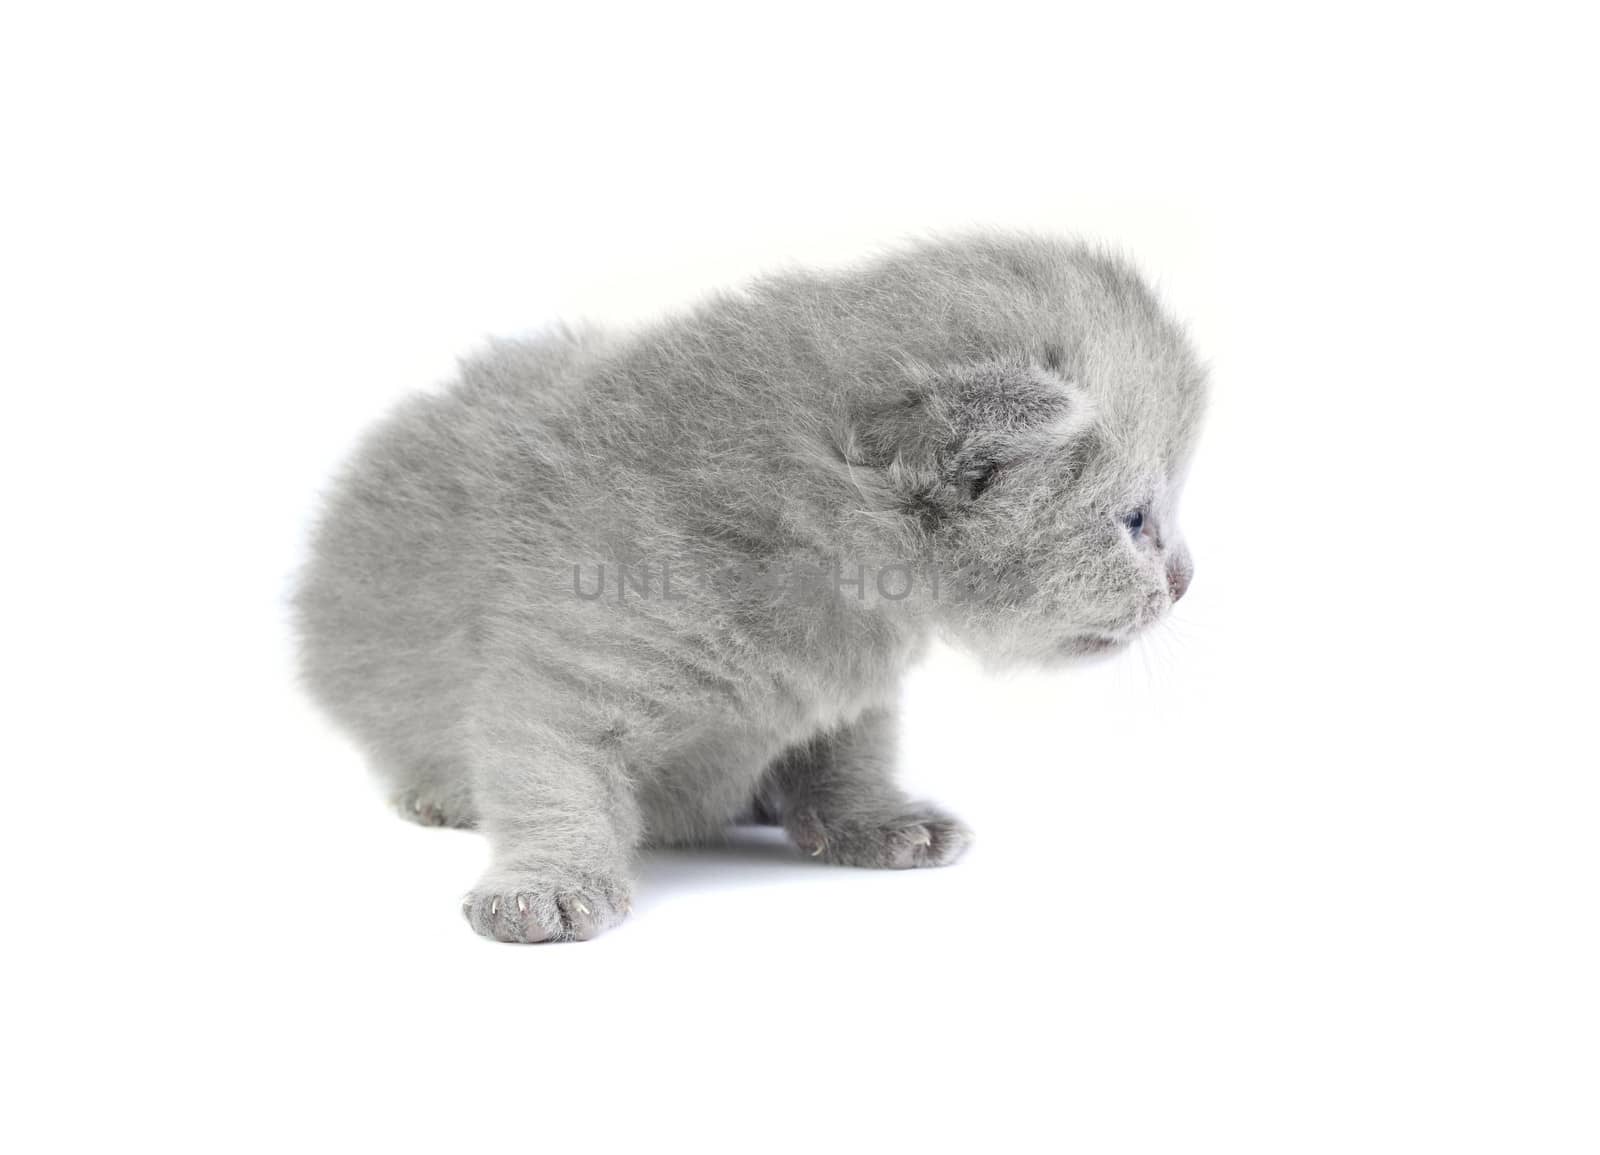 Little kitten by dedmorozz